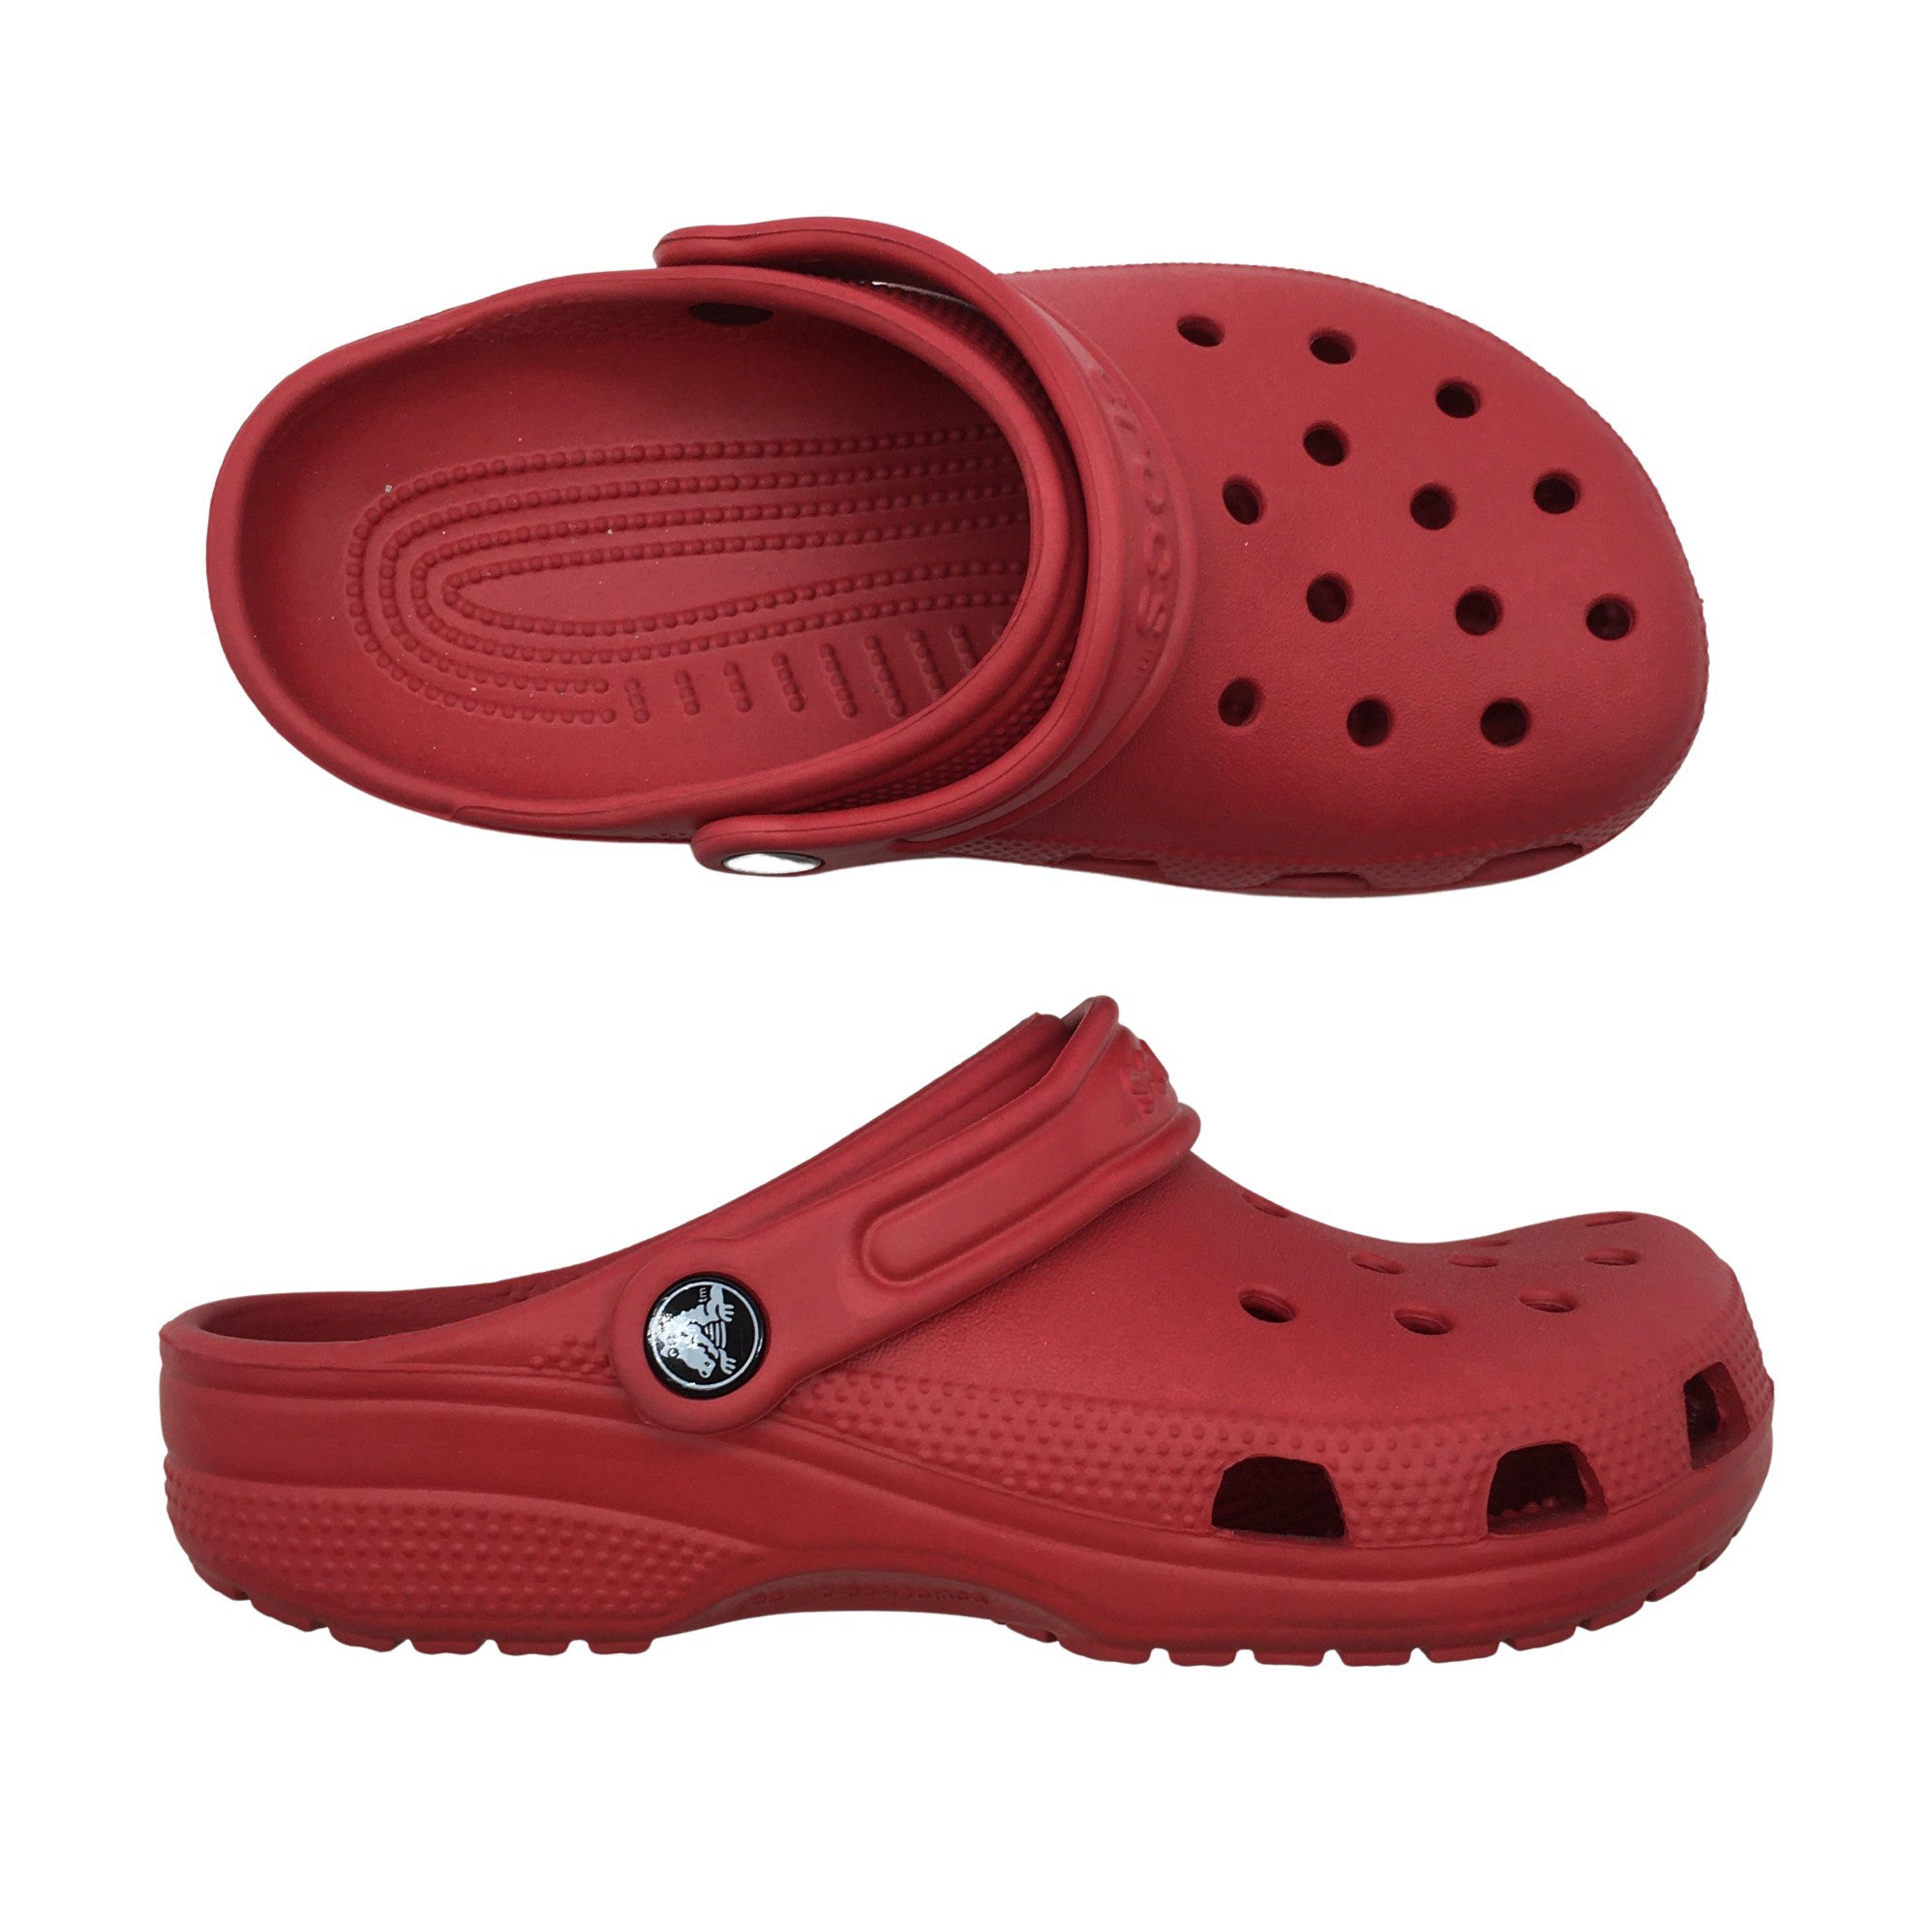 Crocs shoes | Emmy